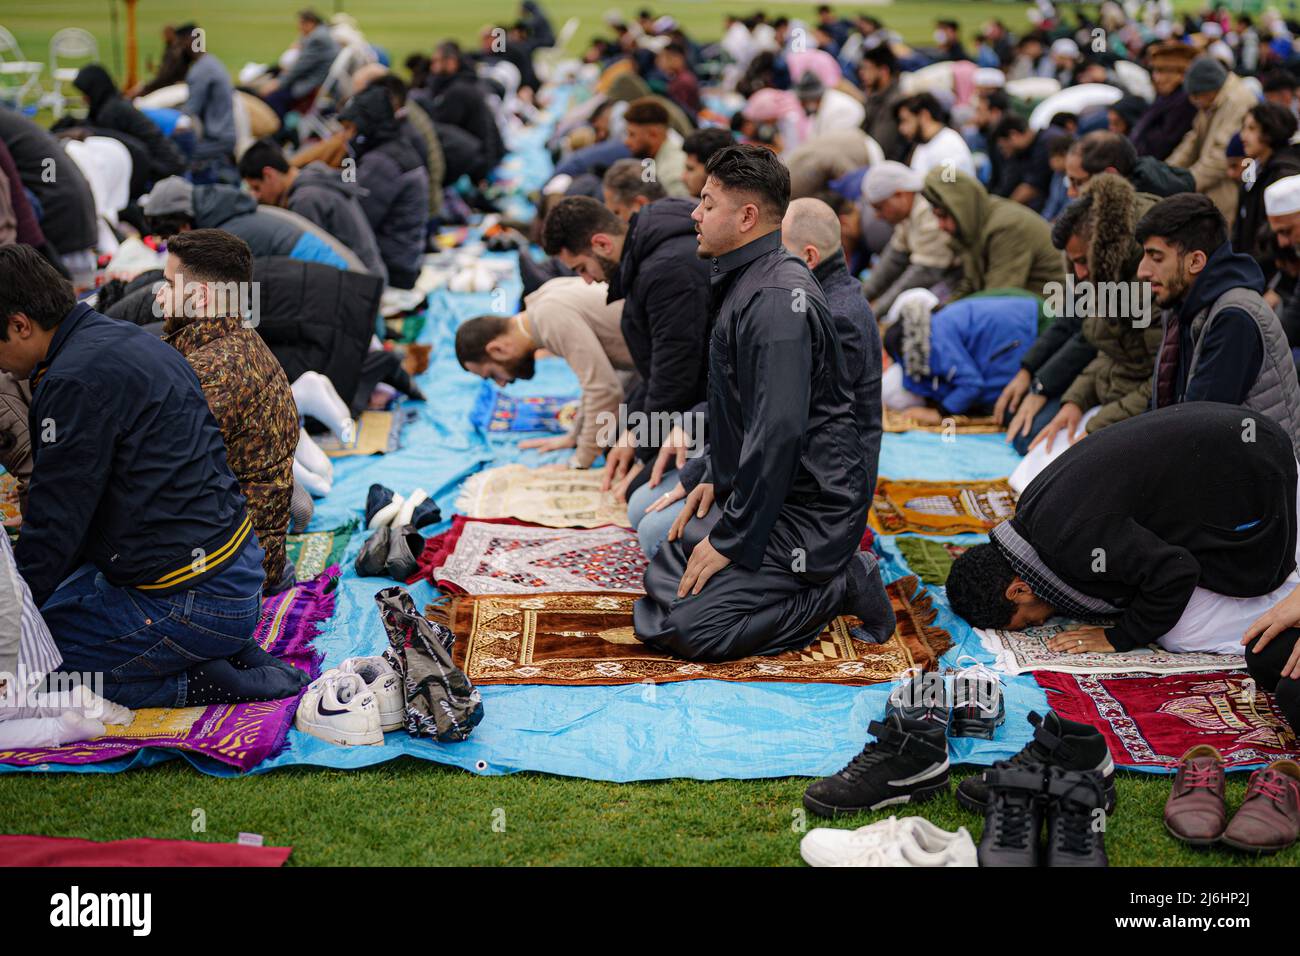 Während der Sunna nehmen Menschen am Eid-Gebet Teil, während sie im Freien im Big Eid Salah in Bristol beten: Eid al-Fitr 2022, als der heilige Monat Ramadan zu Ende geht und Muslime Eid al-Fitr feiern. Bilddatum: Montag, 2. Mai 2022. Stockfoto